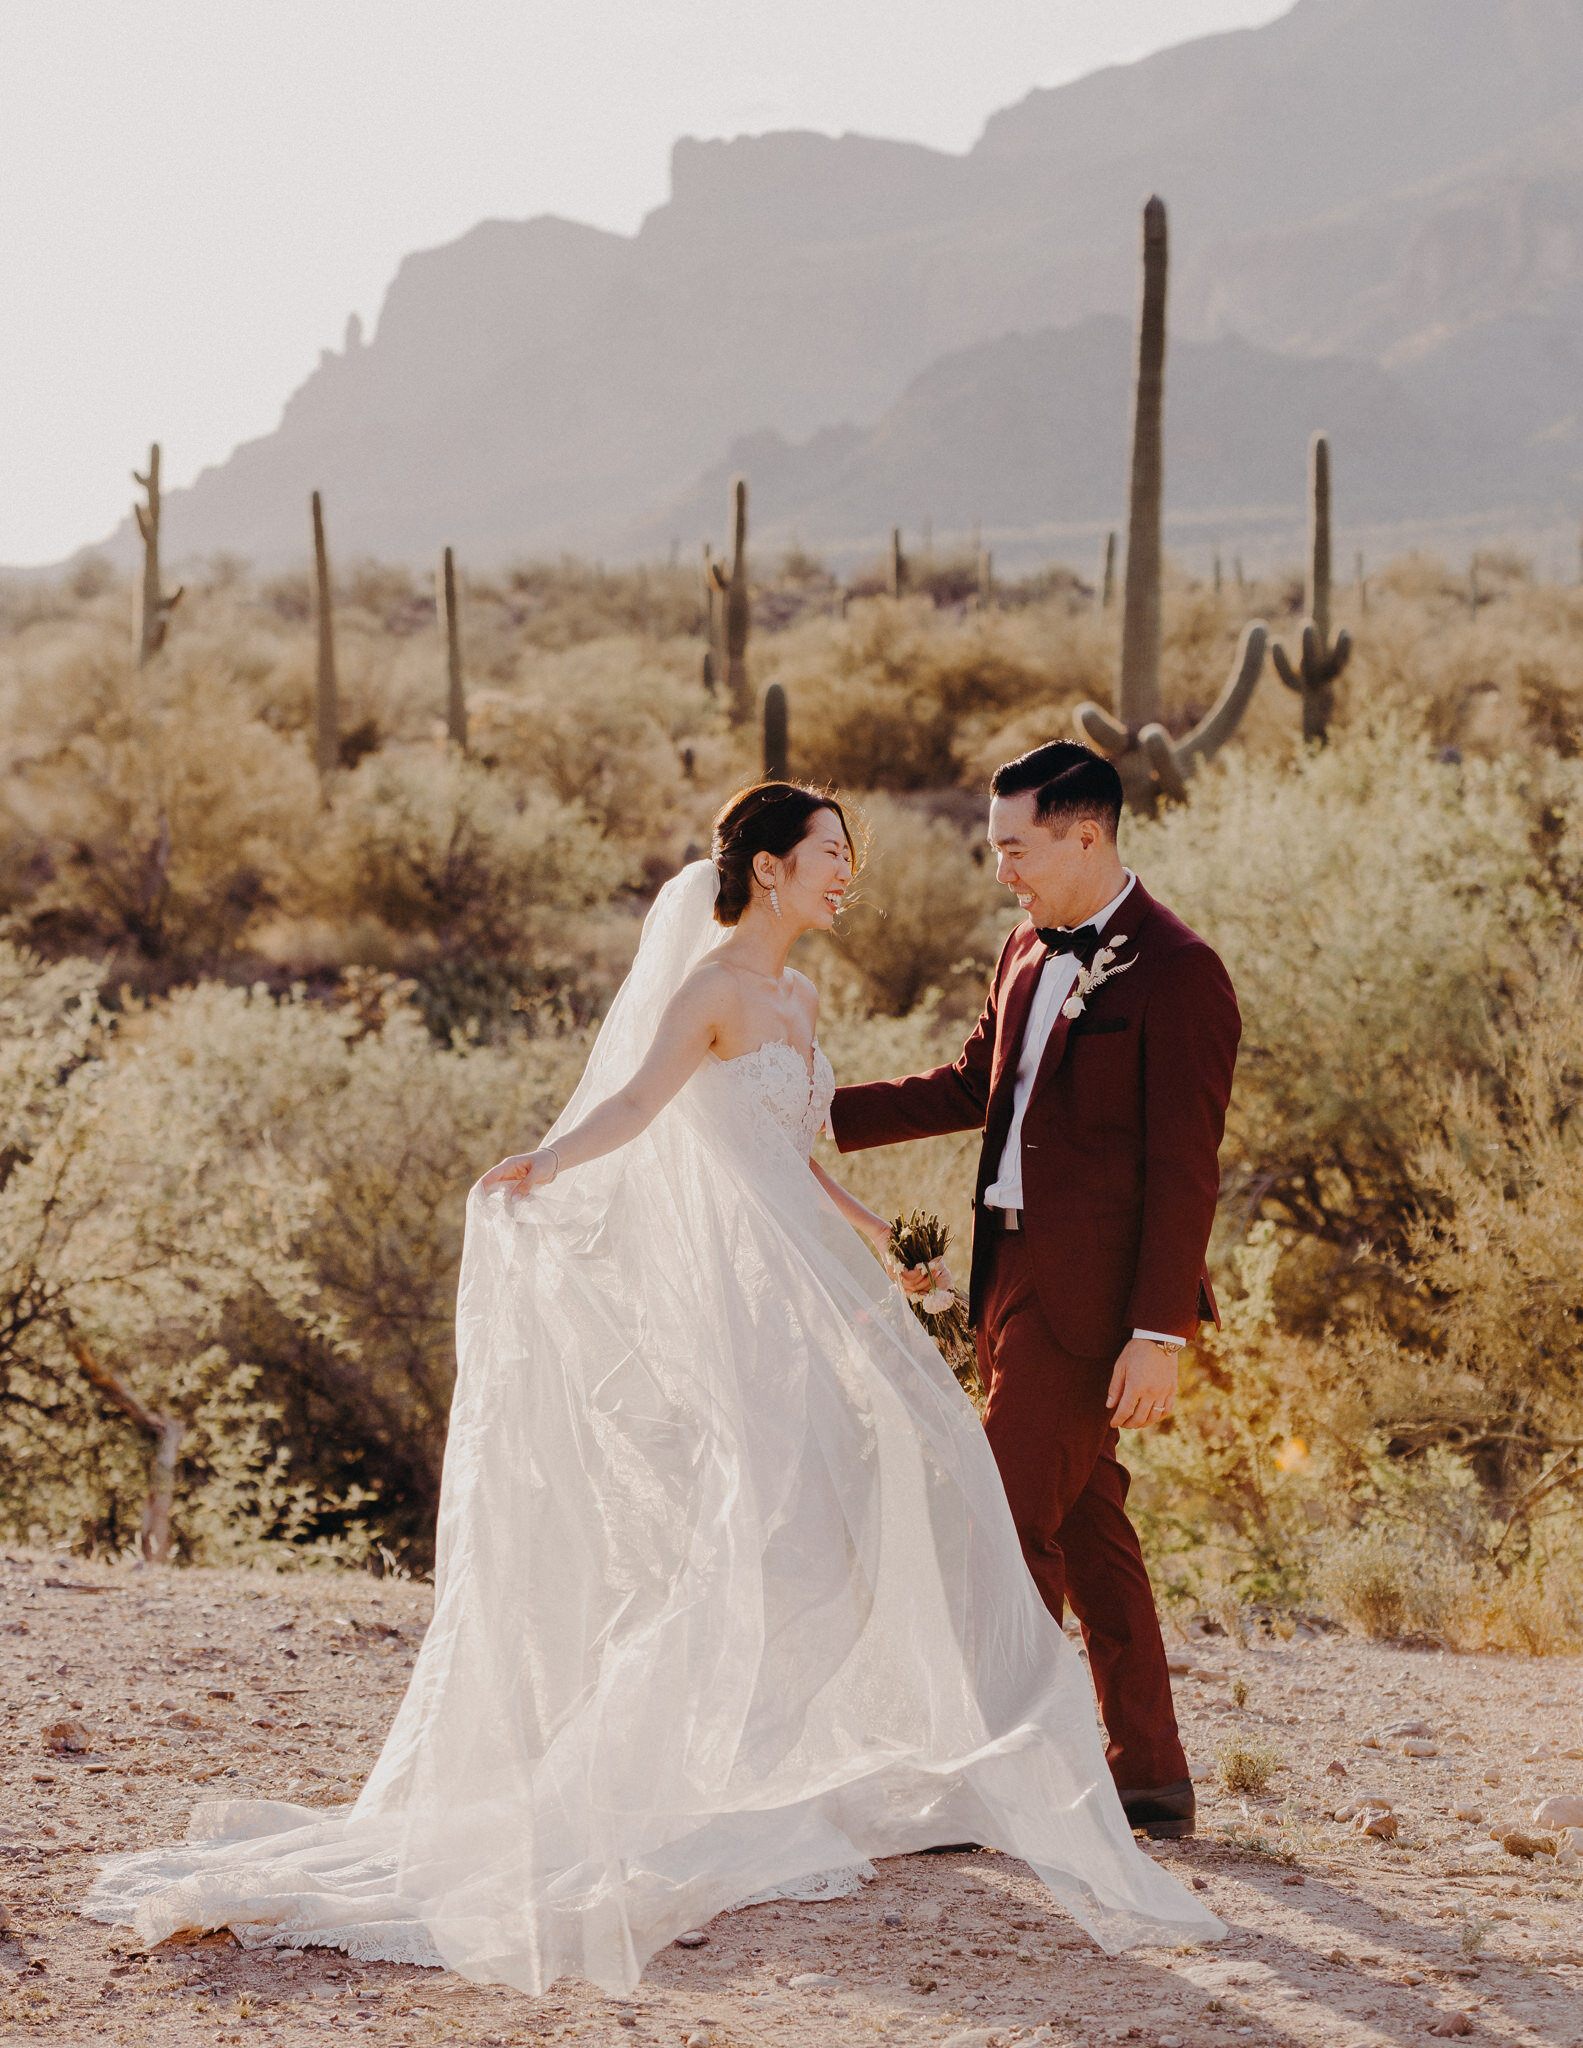 california wedding photograhers - desert elopement - supersition mountains - isaiahandtaylor.com-88.jpg